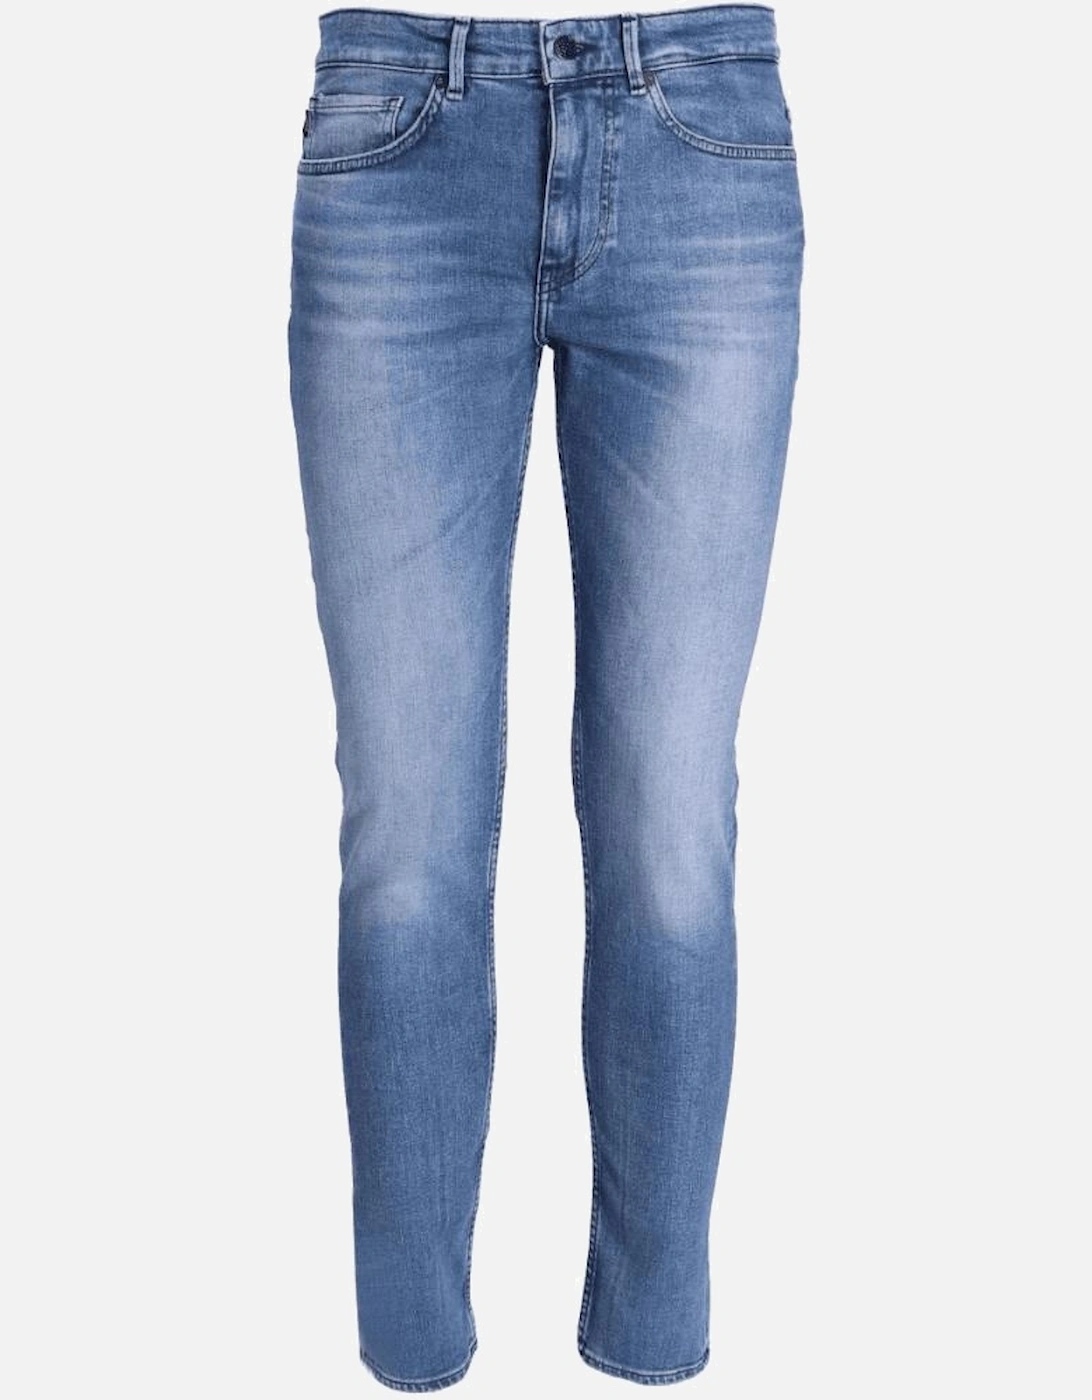 Delano Slim Fit Light Wash blue Jeans, 4 of 3